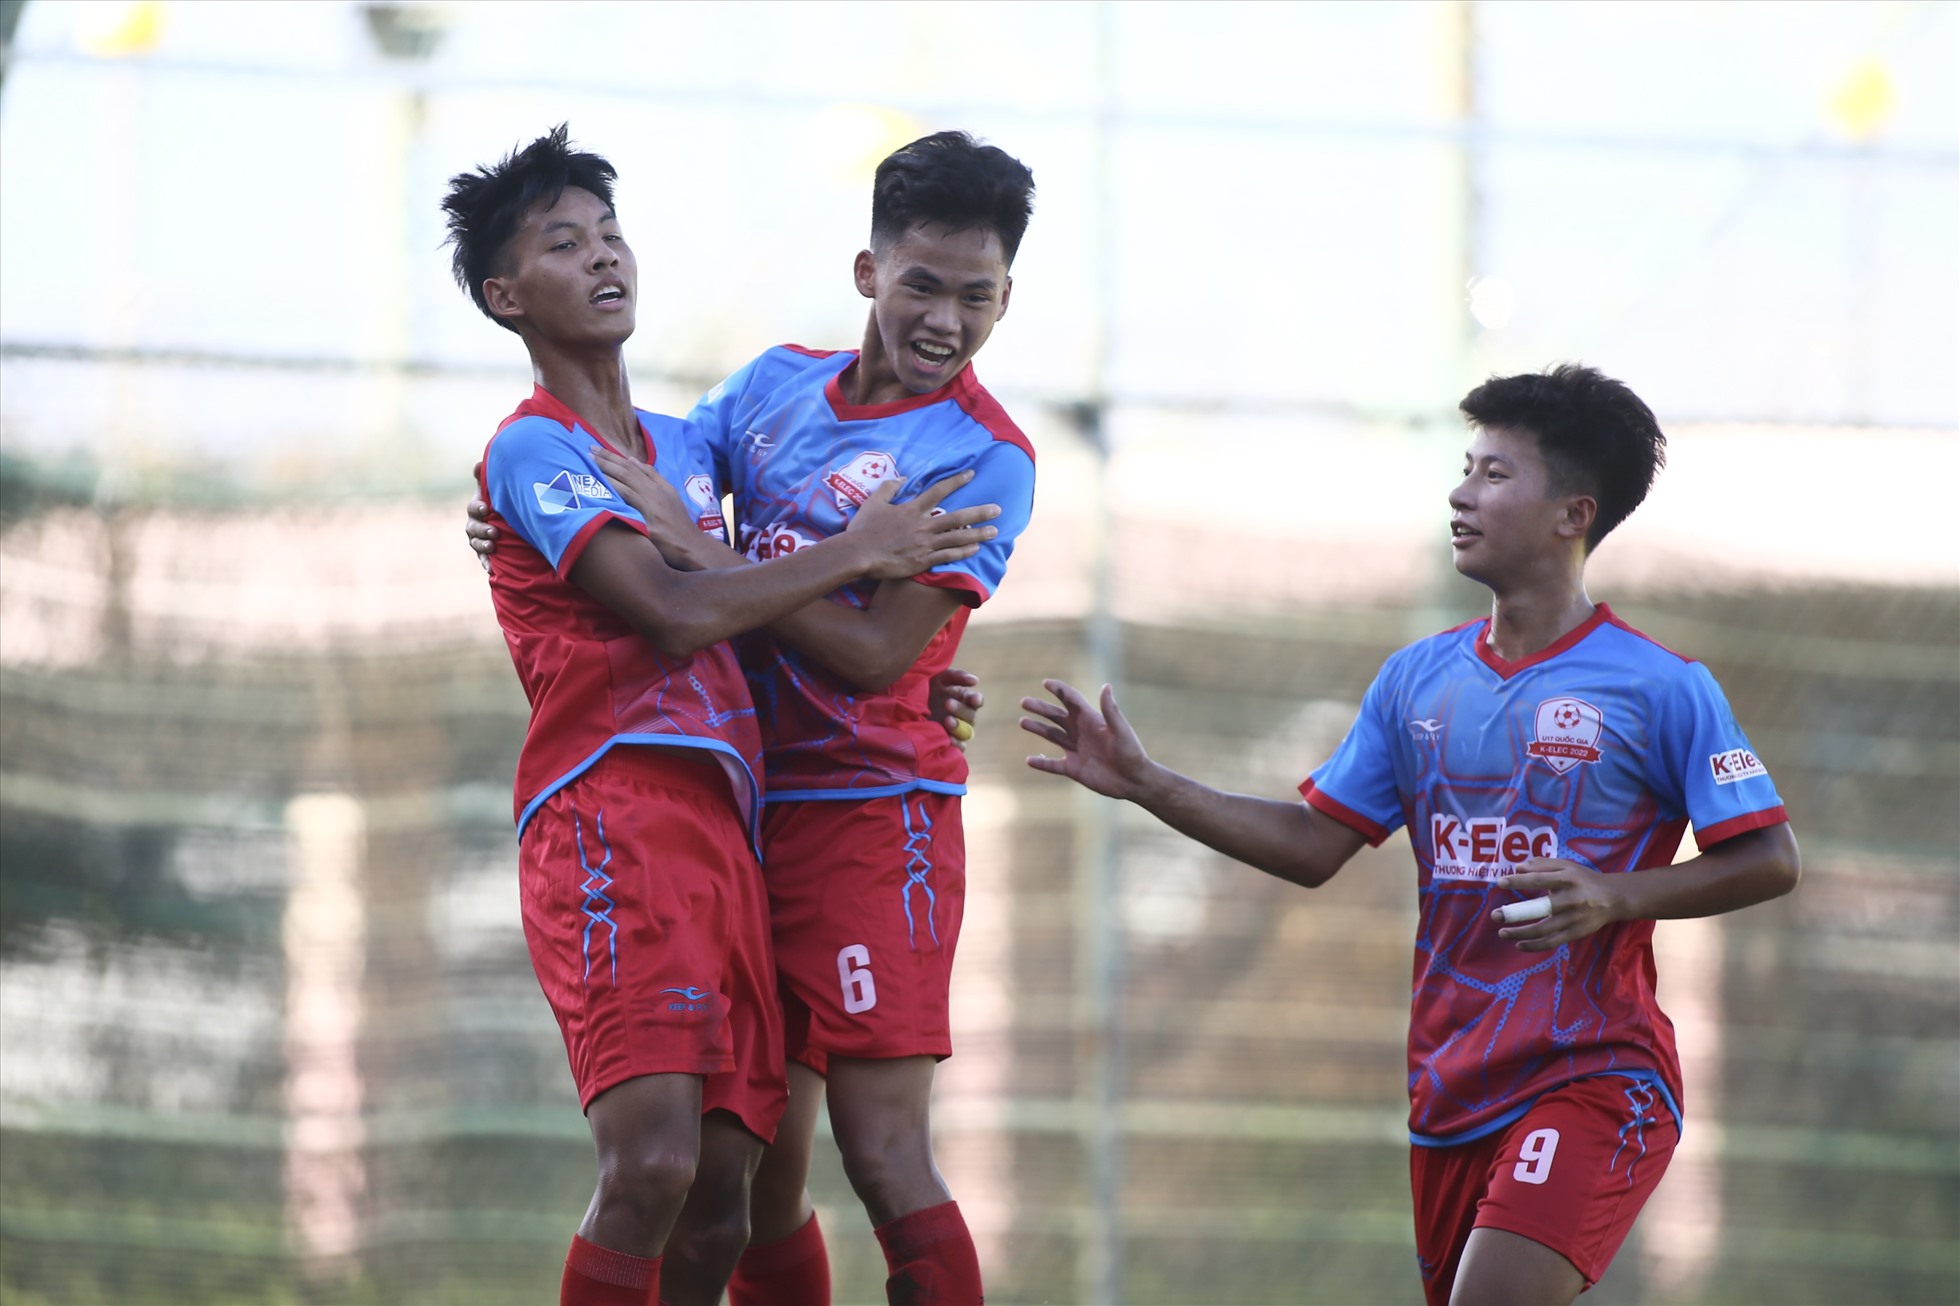 Ở trận đấu cuối cùng, ứng cử viên vô địch Hà Nội đã thị uy sức mạnh bằng chiến thắng đậm đà 4-0 trước Bình Dương, qua đó trở thành đội có chiến thắng đậm nhất trong ngày thi đấu đầu tiên vòng chung kết U17 Quốc gia 2022.